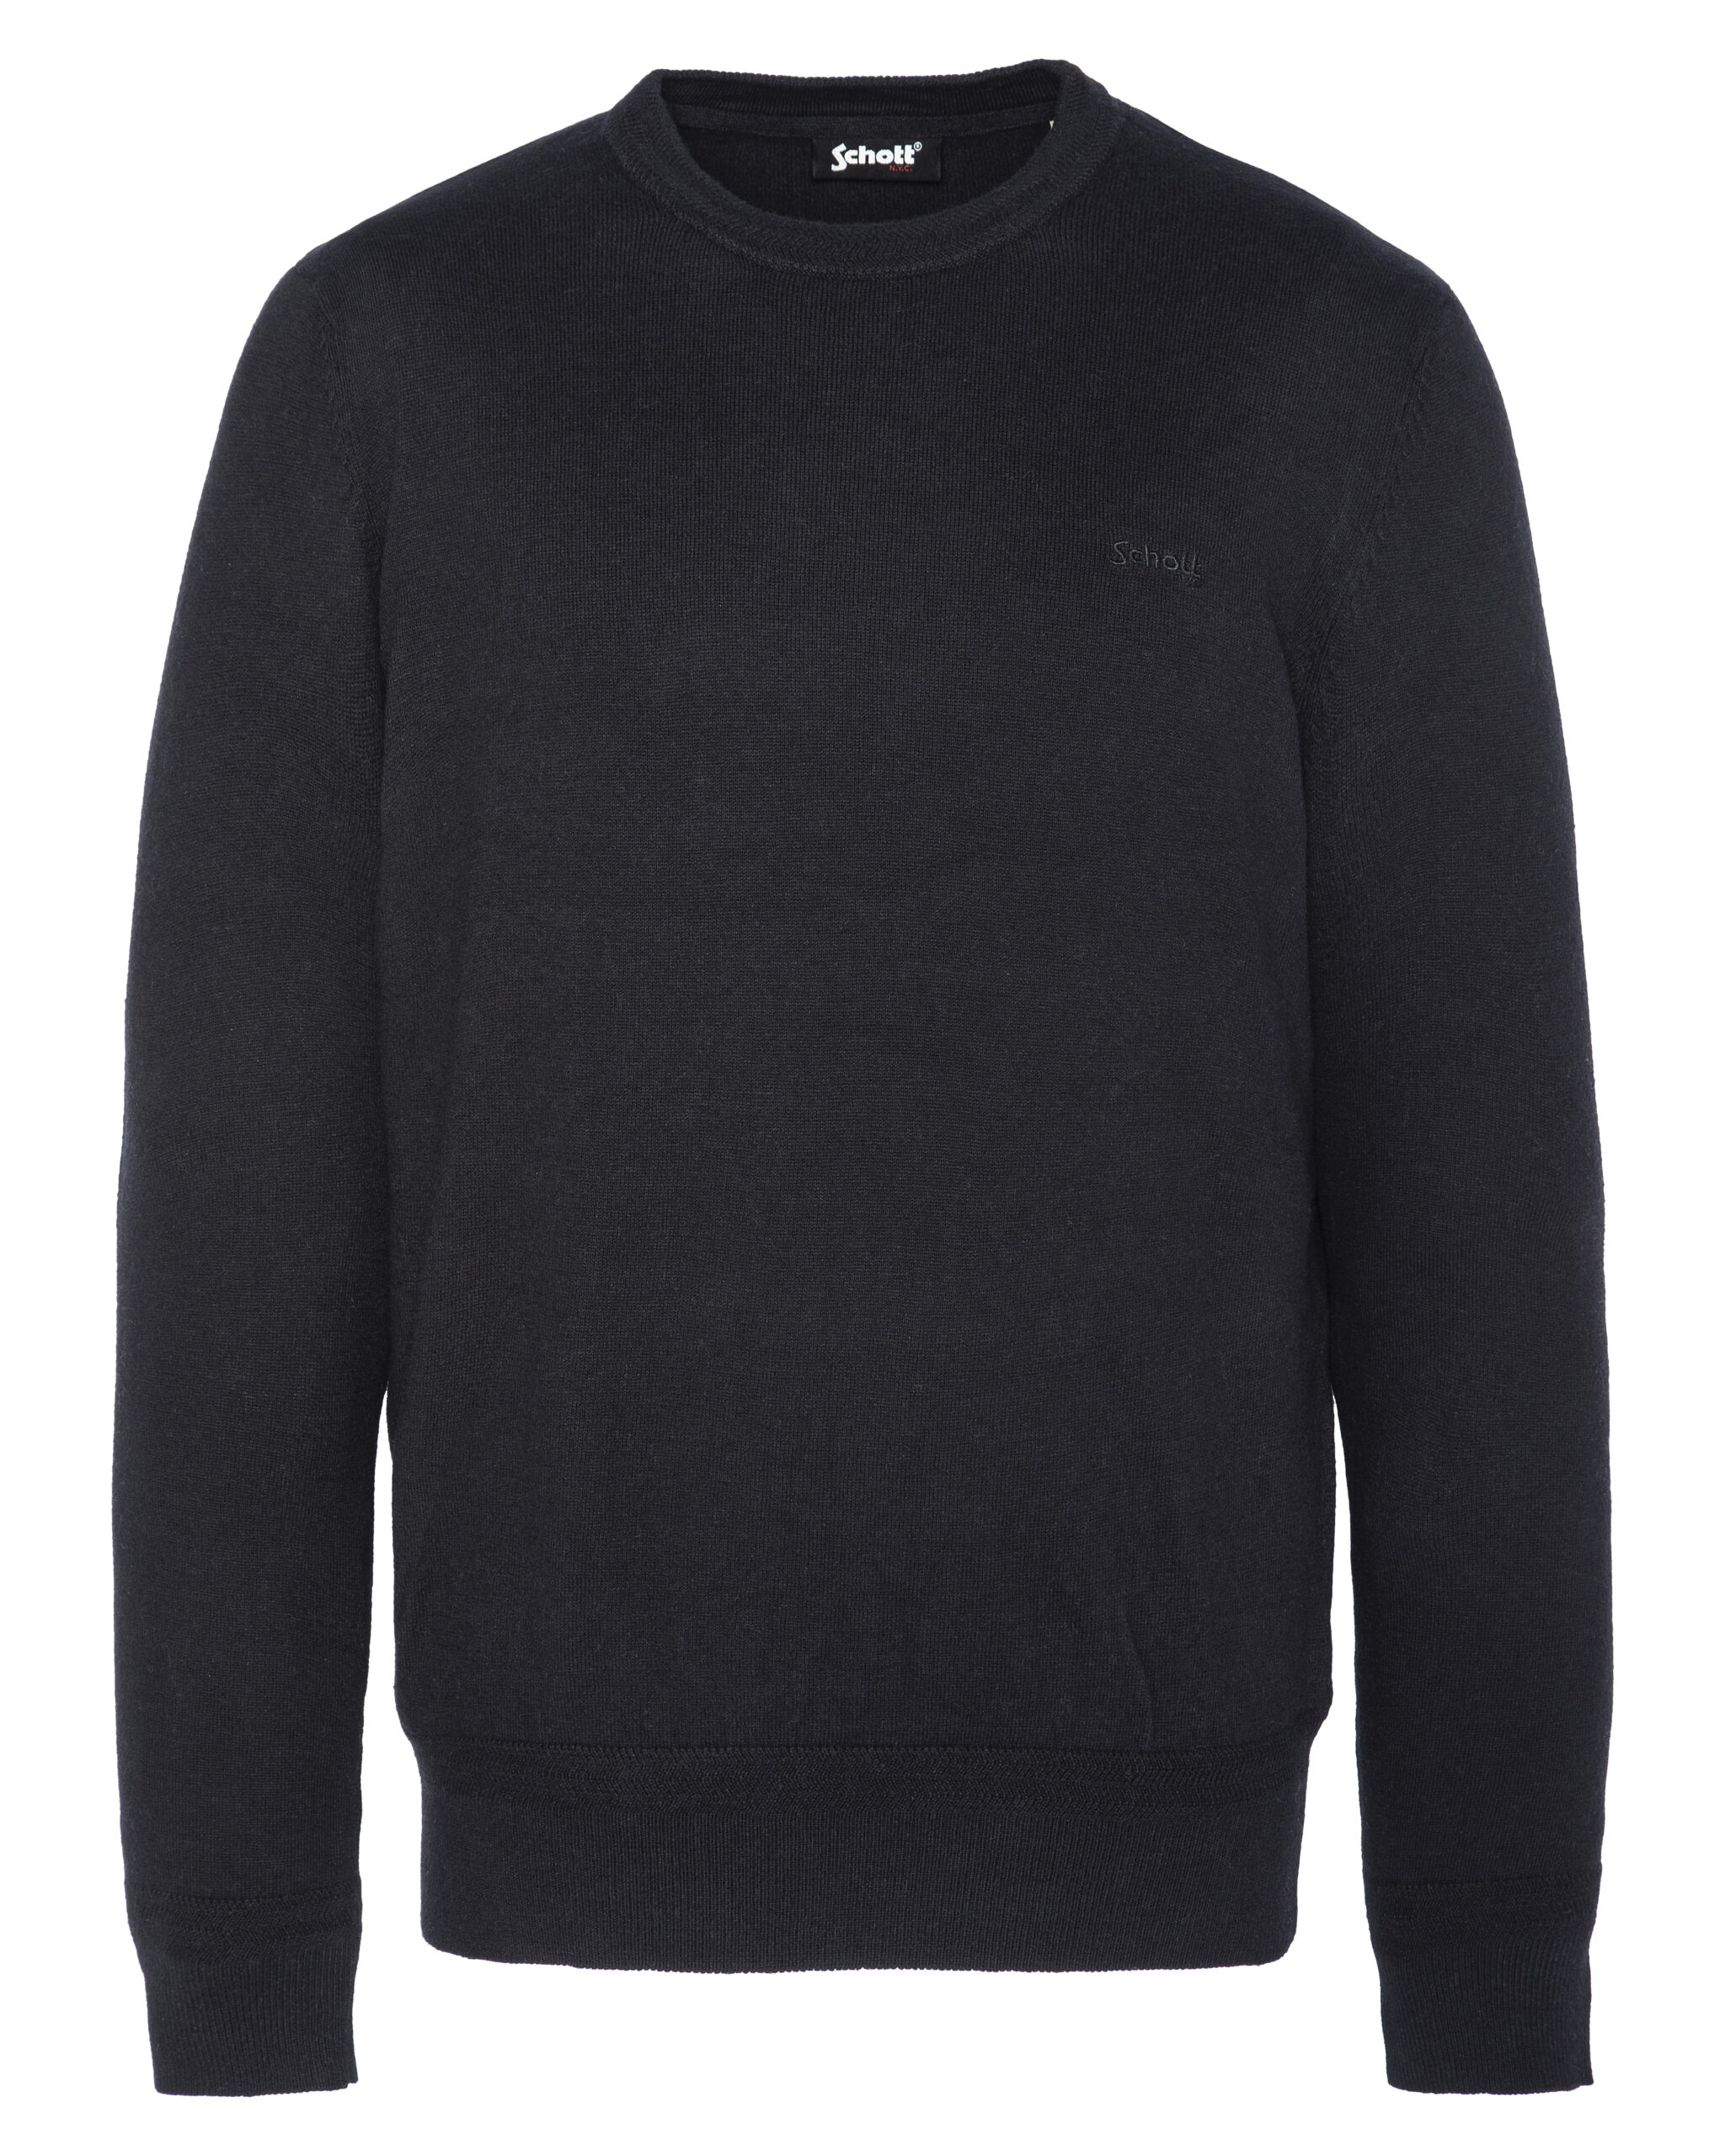 Round Neck Sweater Schott Black